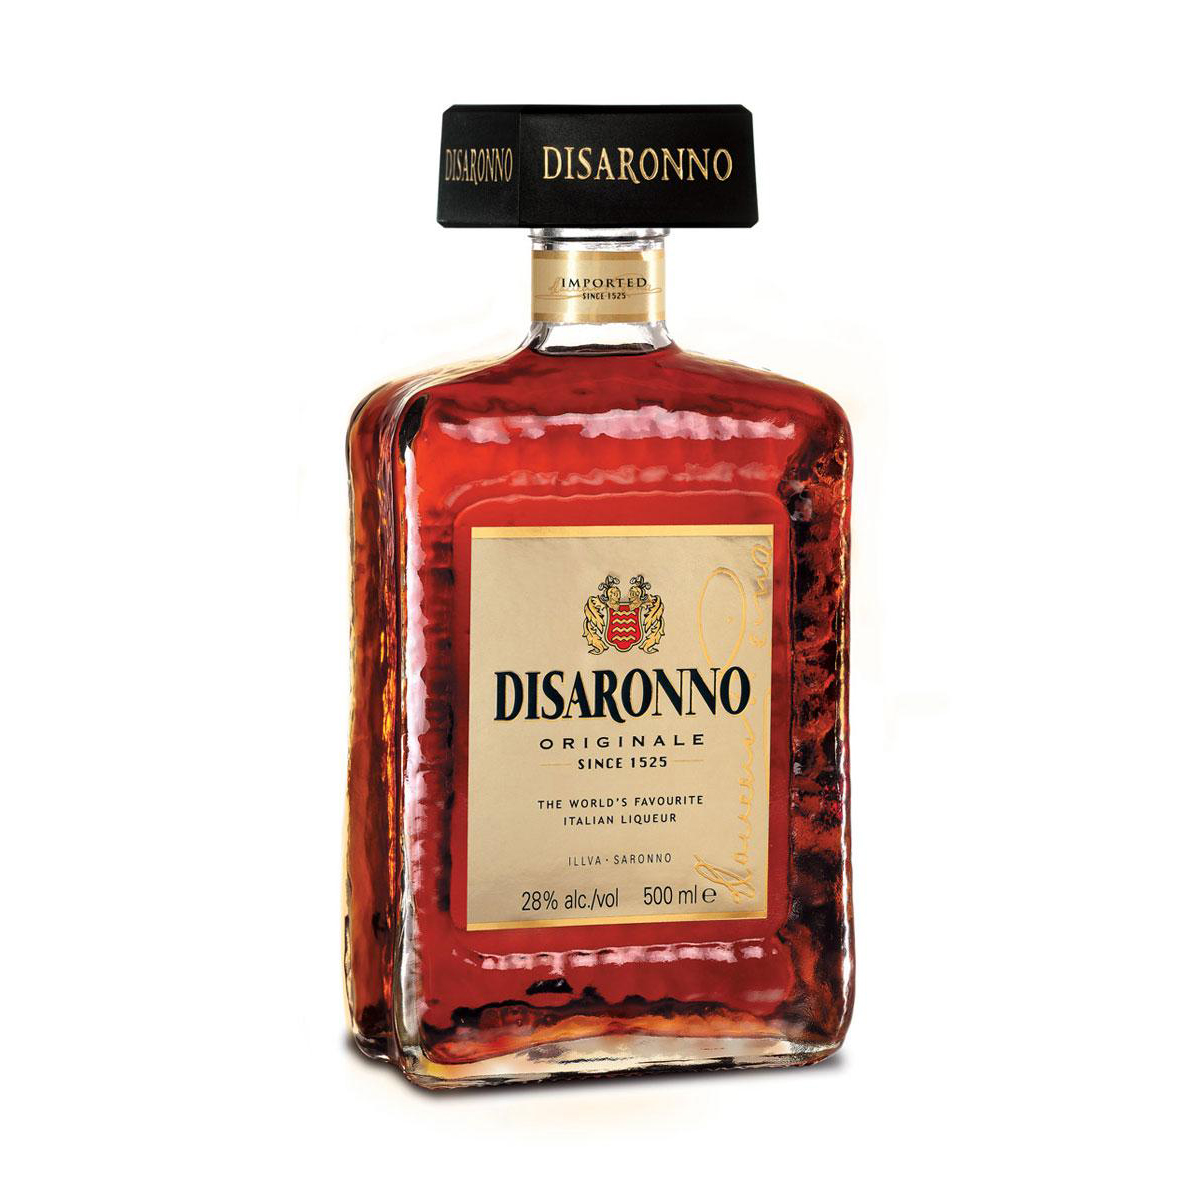 Buy Amaretto / Disaronno Liqueur Online